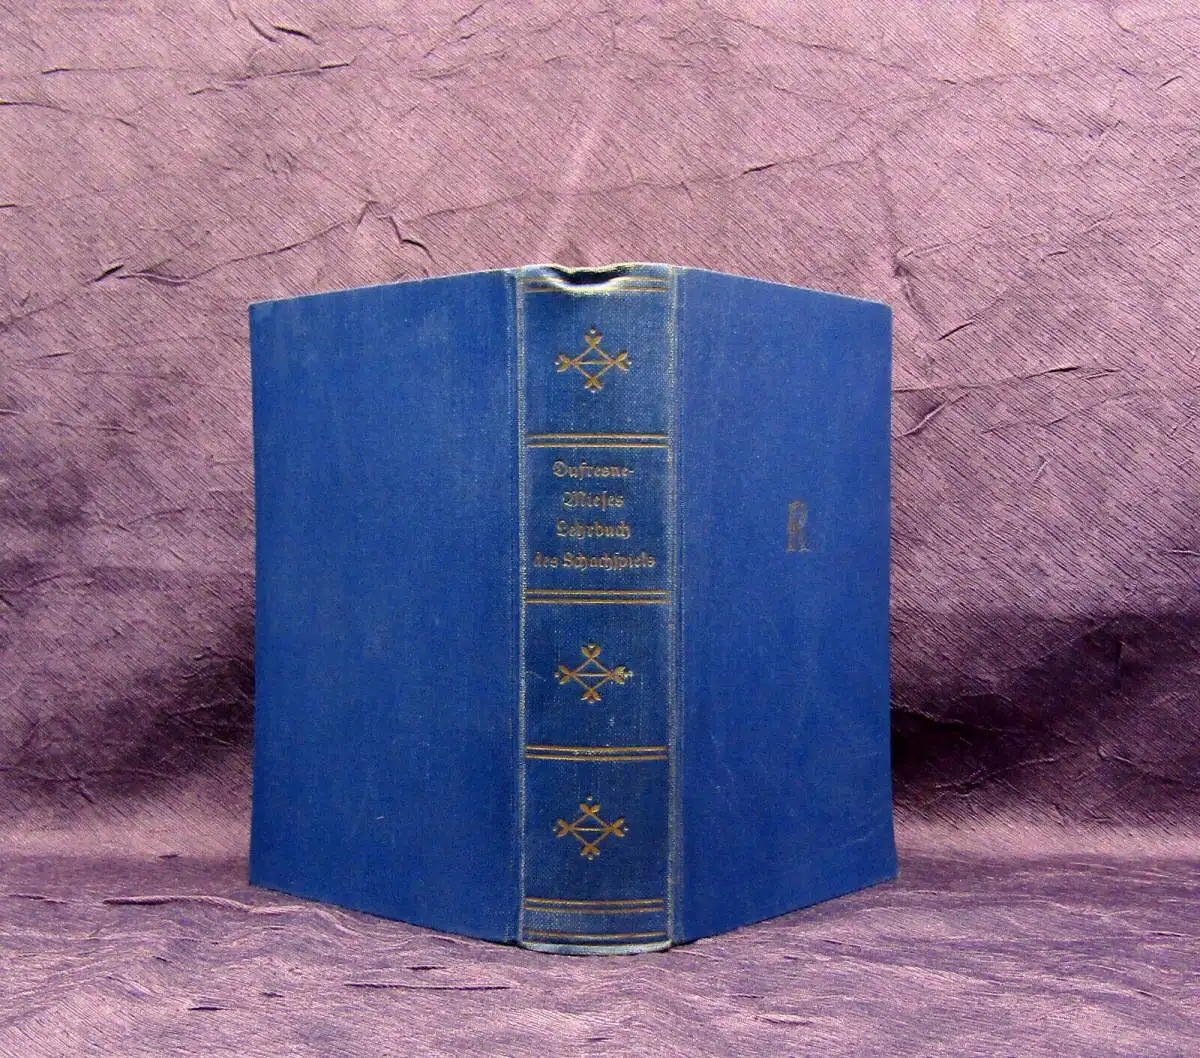 Mieses/Dufresne Lehrbuch des Schachspiels 1935 Denksport Turnier Schach Kultur